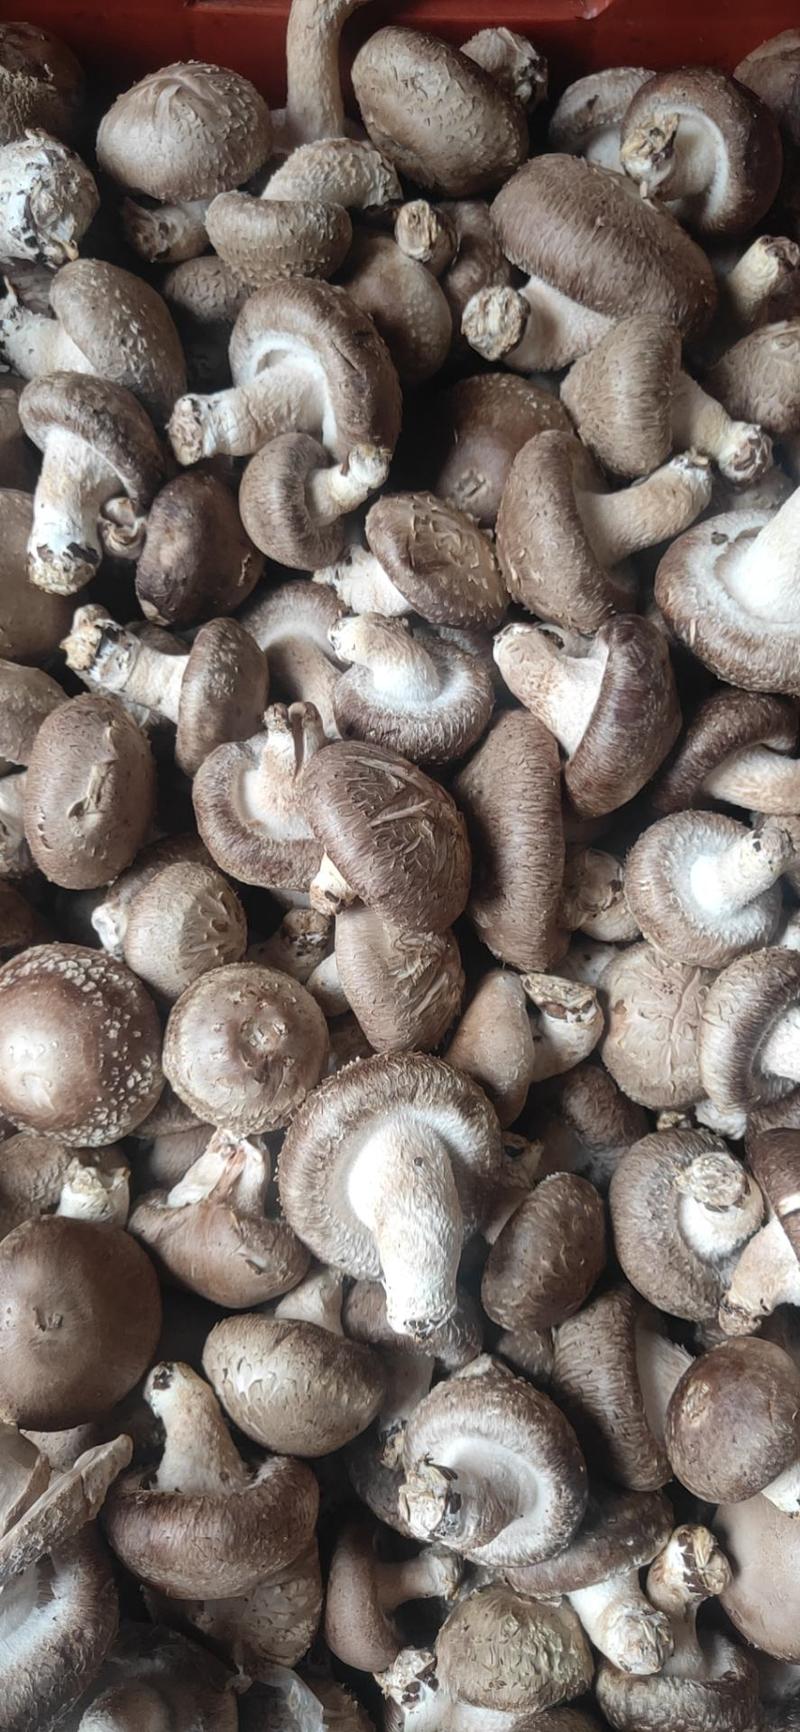 食用菌花菇质量保证每日新鲜